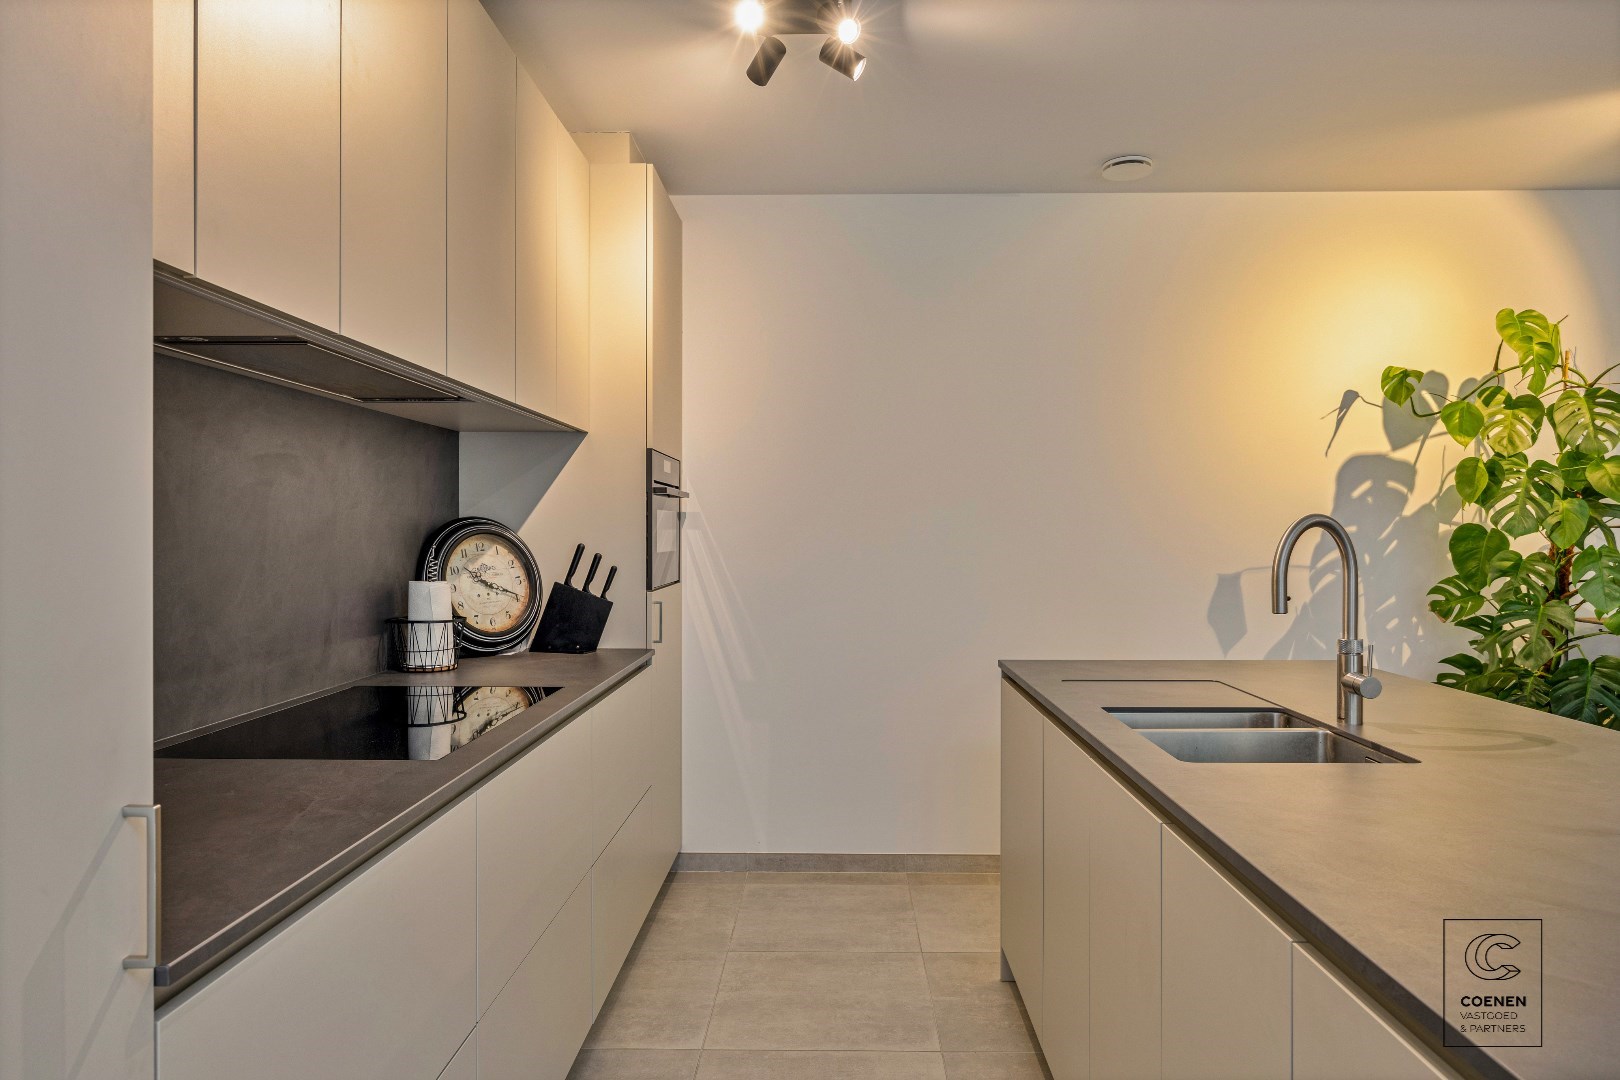 Piekfijn, modern gelijkvloersappartement (125 m2) met 2 slaapkamers, priv&#233;tuin en ondergrondse garage  (+ €30.000) 